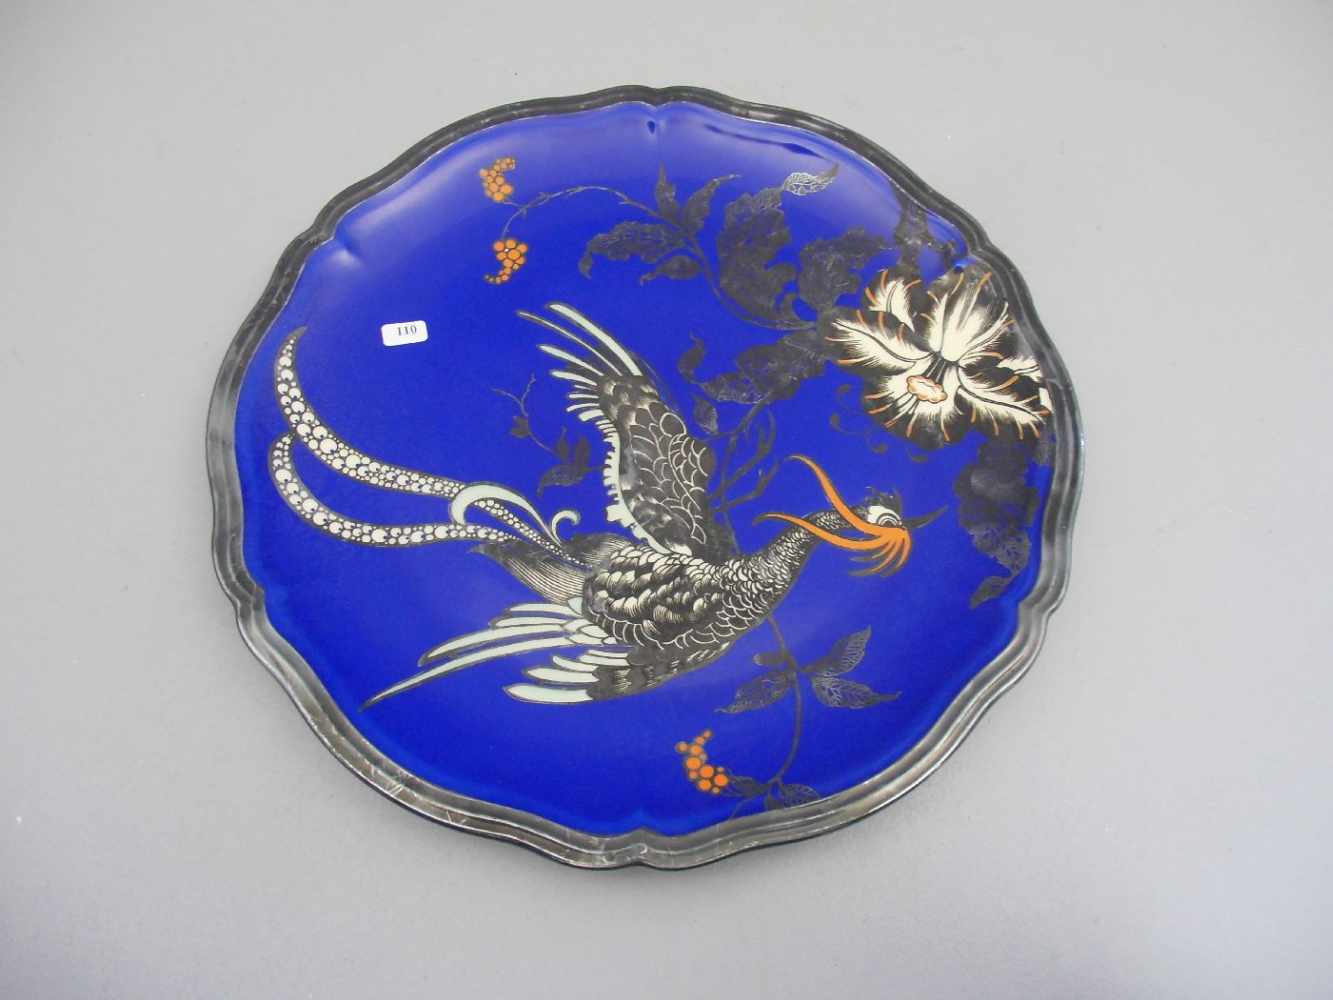 SCHALE, Porzellan, Manufaktur Rosenthal, Marke 1939, Form "Chippendale" mit chinoisem Dekor auf